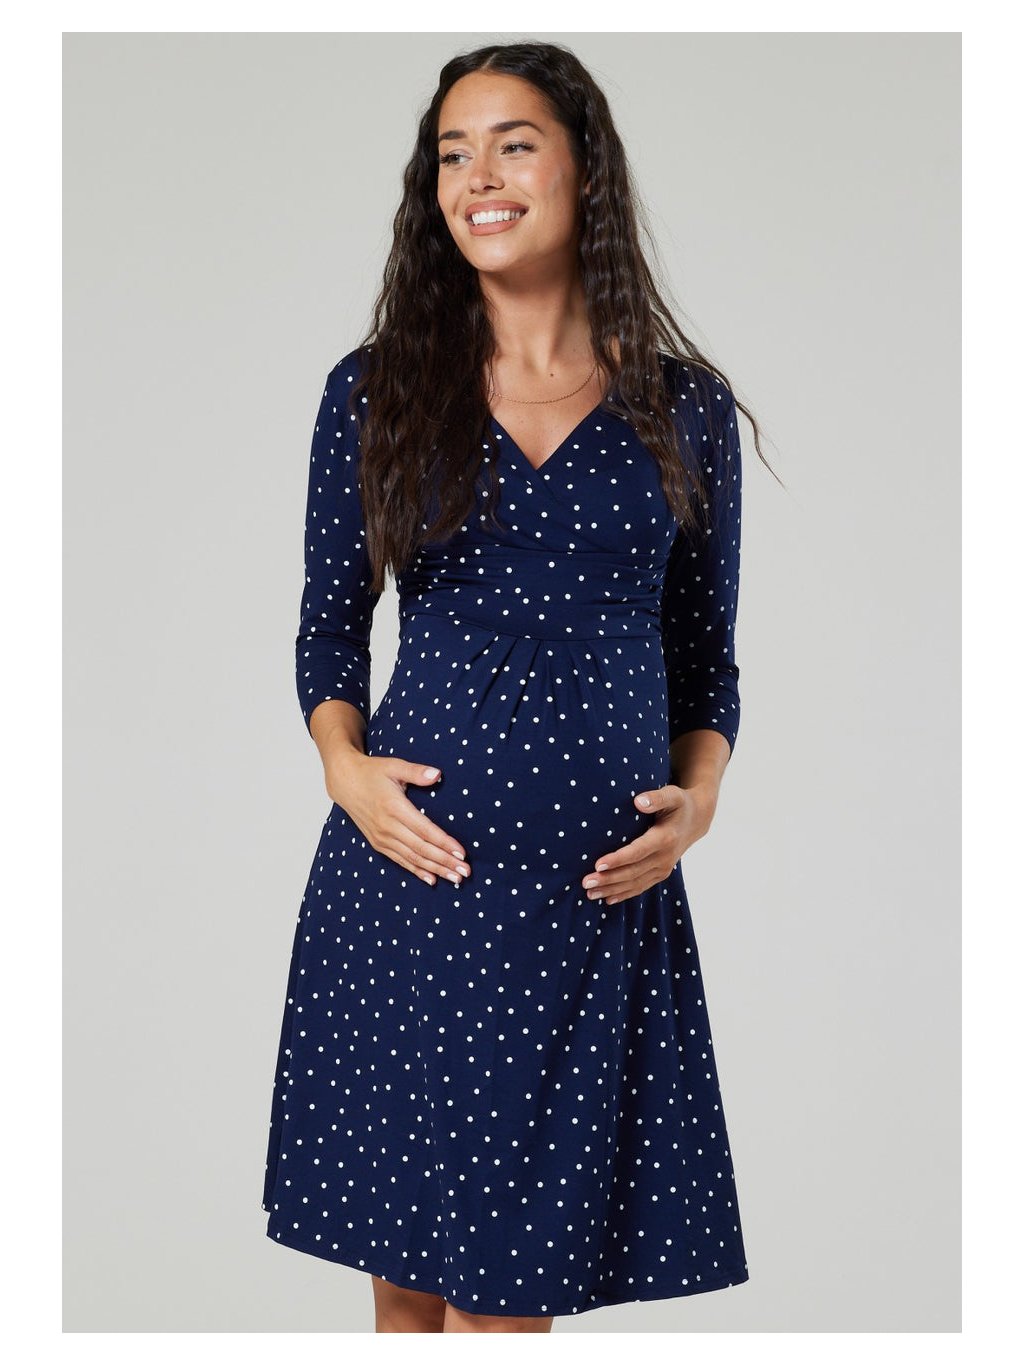 Těhotenské šaty modré s puntíky kojící